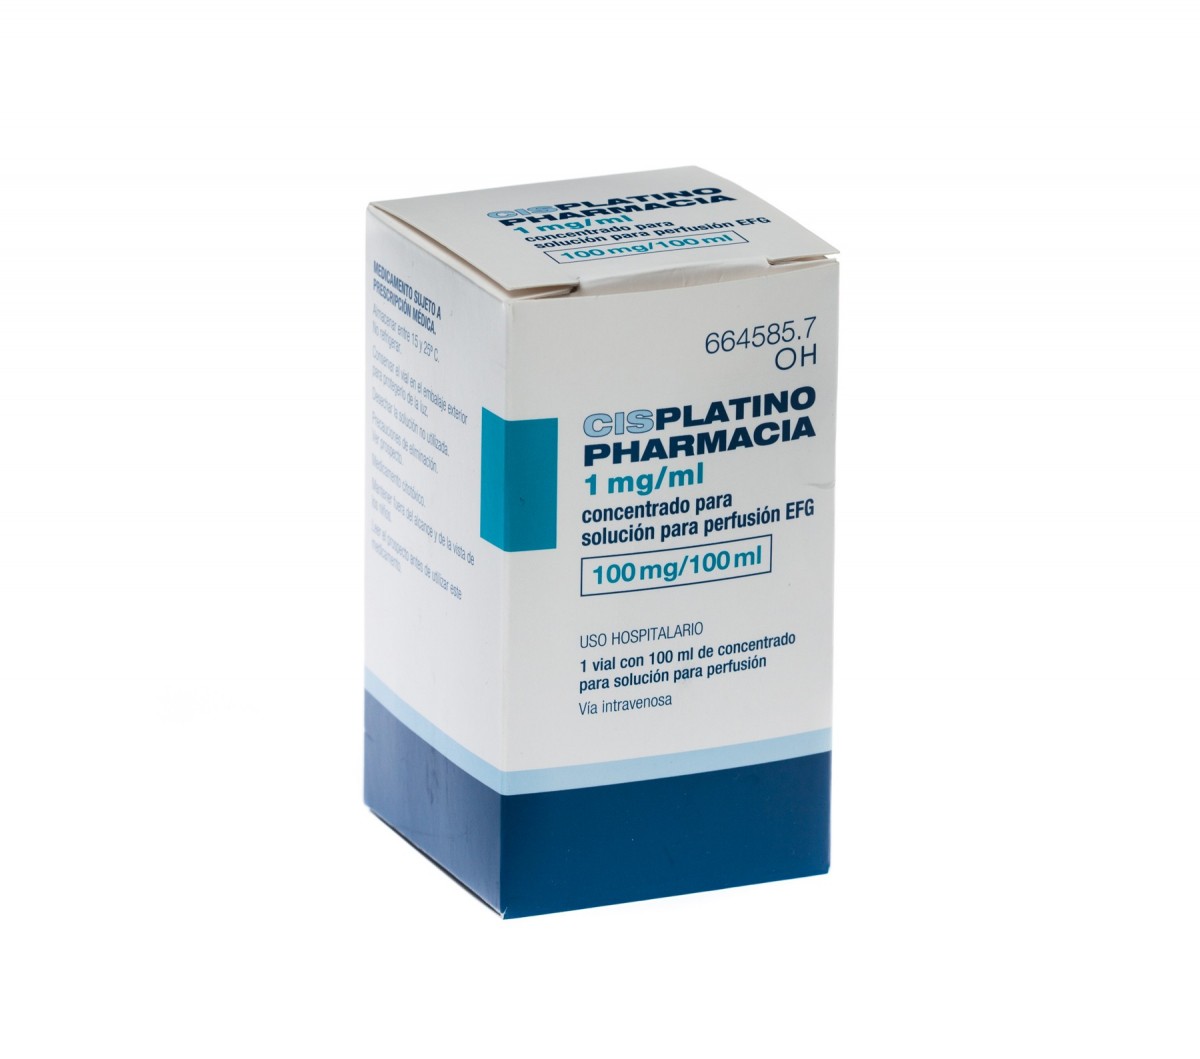 CISPLATINO PHARMACIA 1 mg/ml CONCENTRADO PARA SOLUCION PARA PERFUSION EFG , 1 vial de 100 ml fotografía del envase.